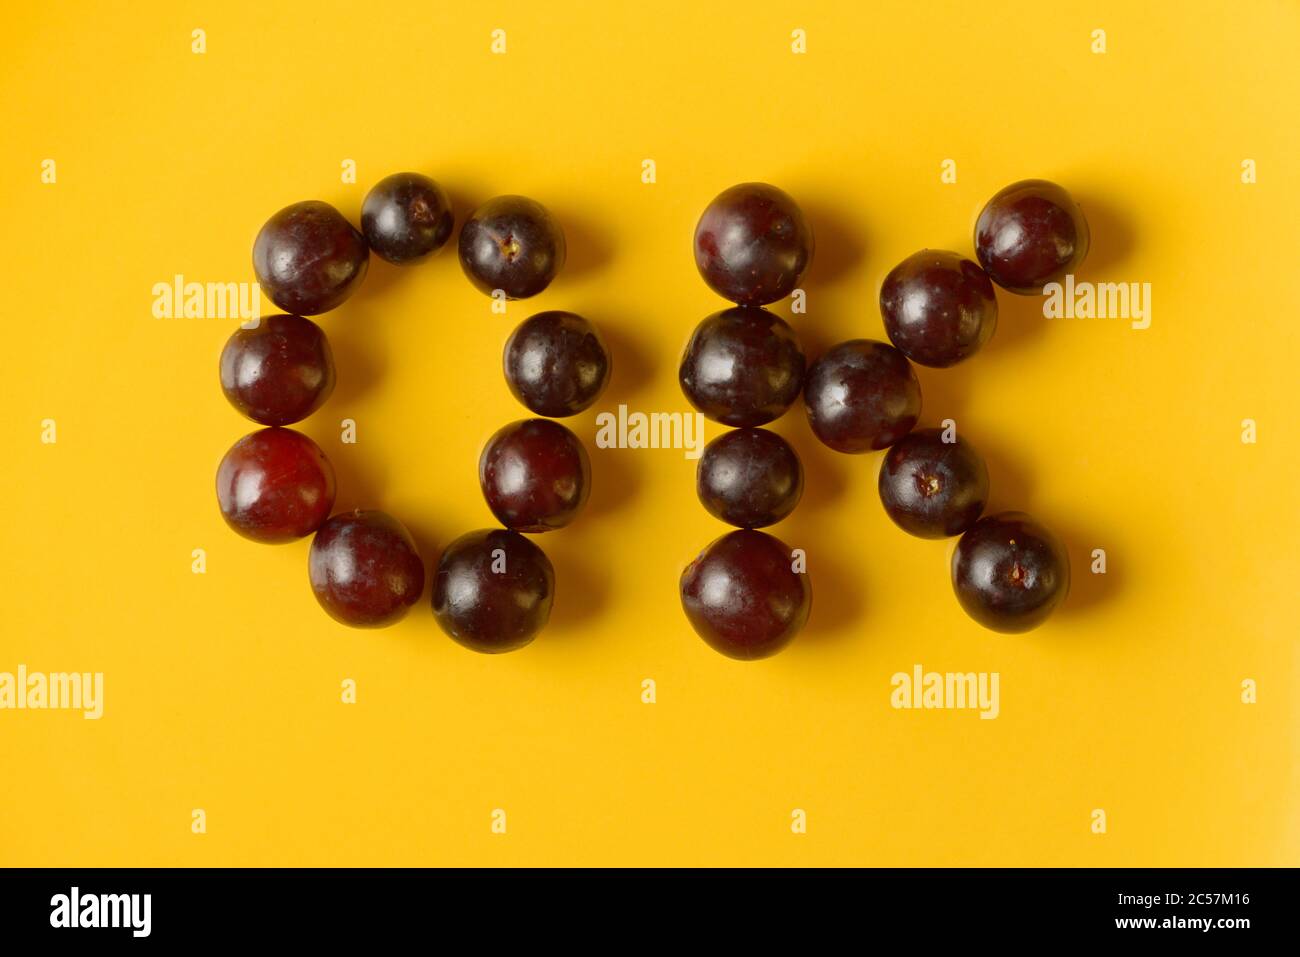 Ritratto del segno OK fatto di uva Foto Stock